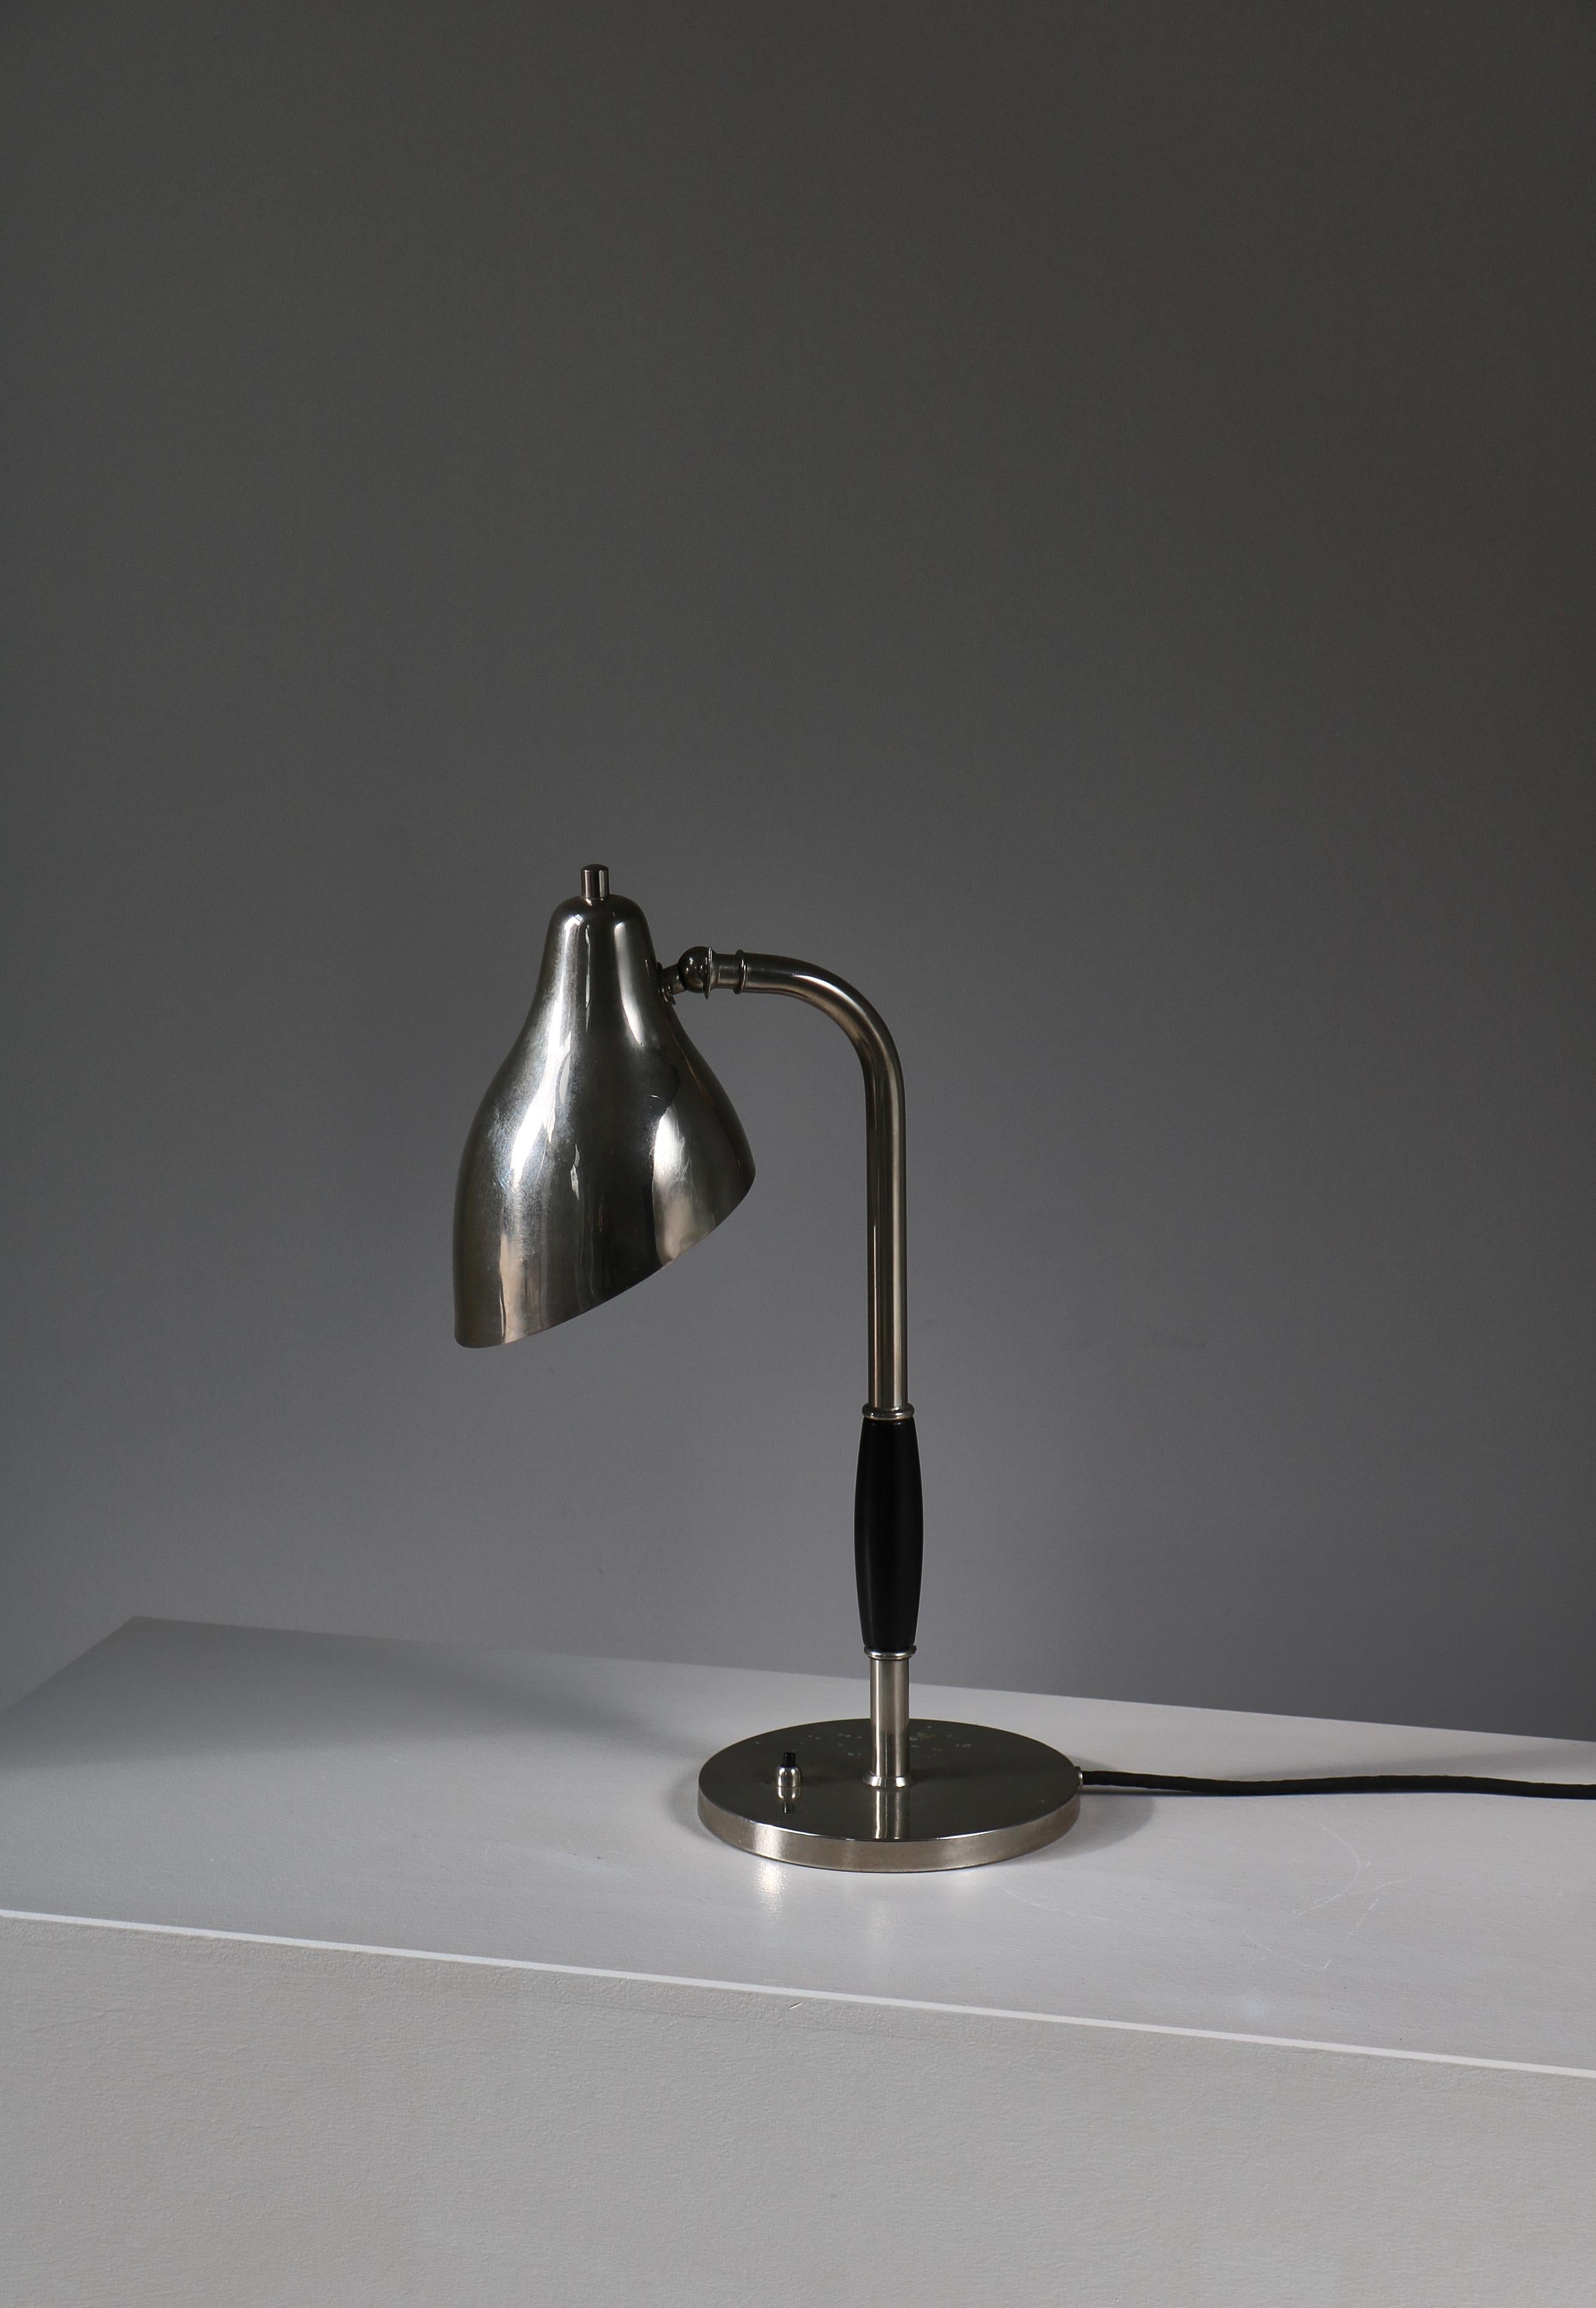 Danish Scandinavian Modern Chromed Table Lamp by Vilhelm Lauritzen, 1940s For Sale